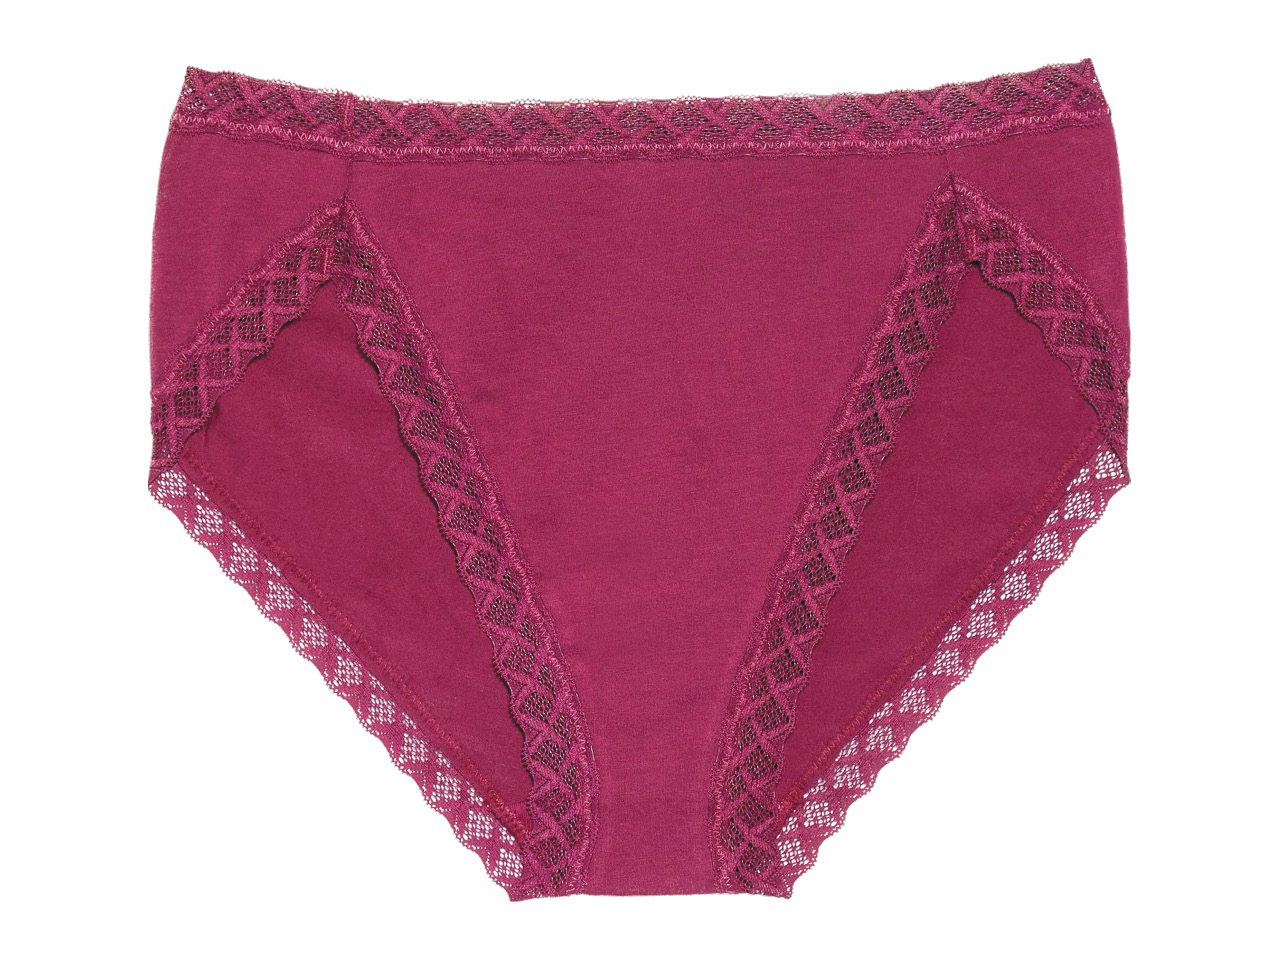 A pair of dark pink cotton underwear from Natori.